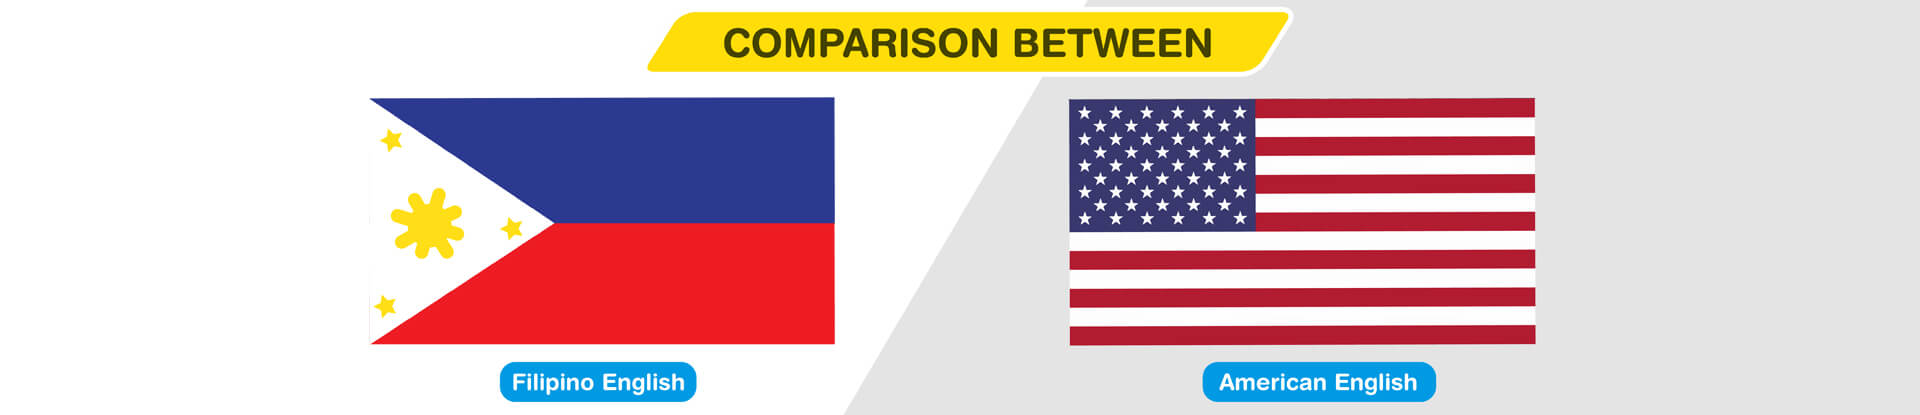 Филиппинский английский и американский английский: сравнение используемых терминов